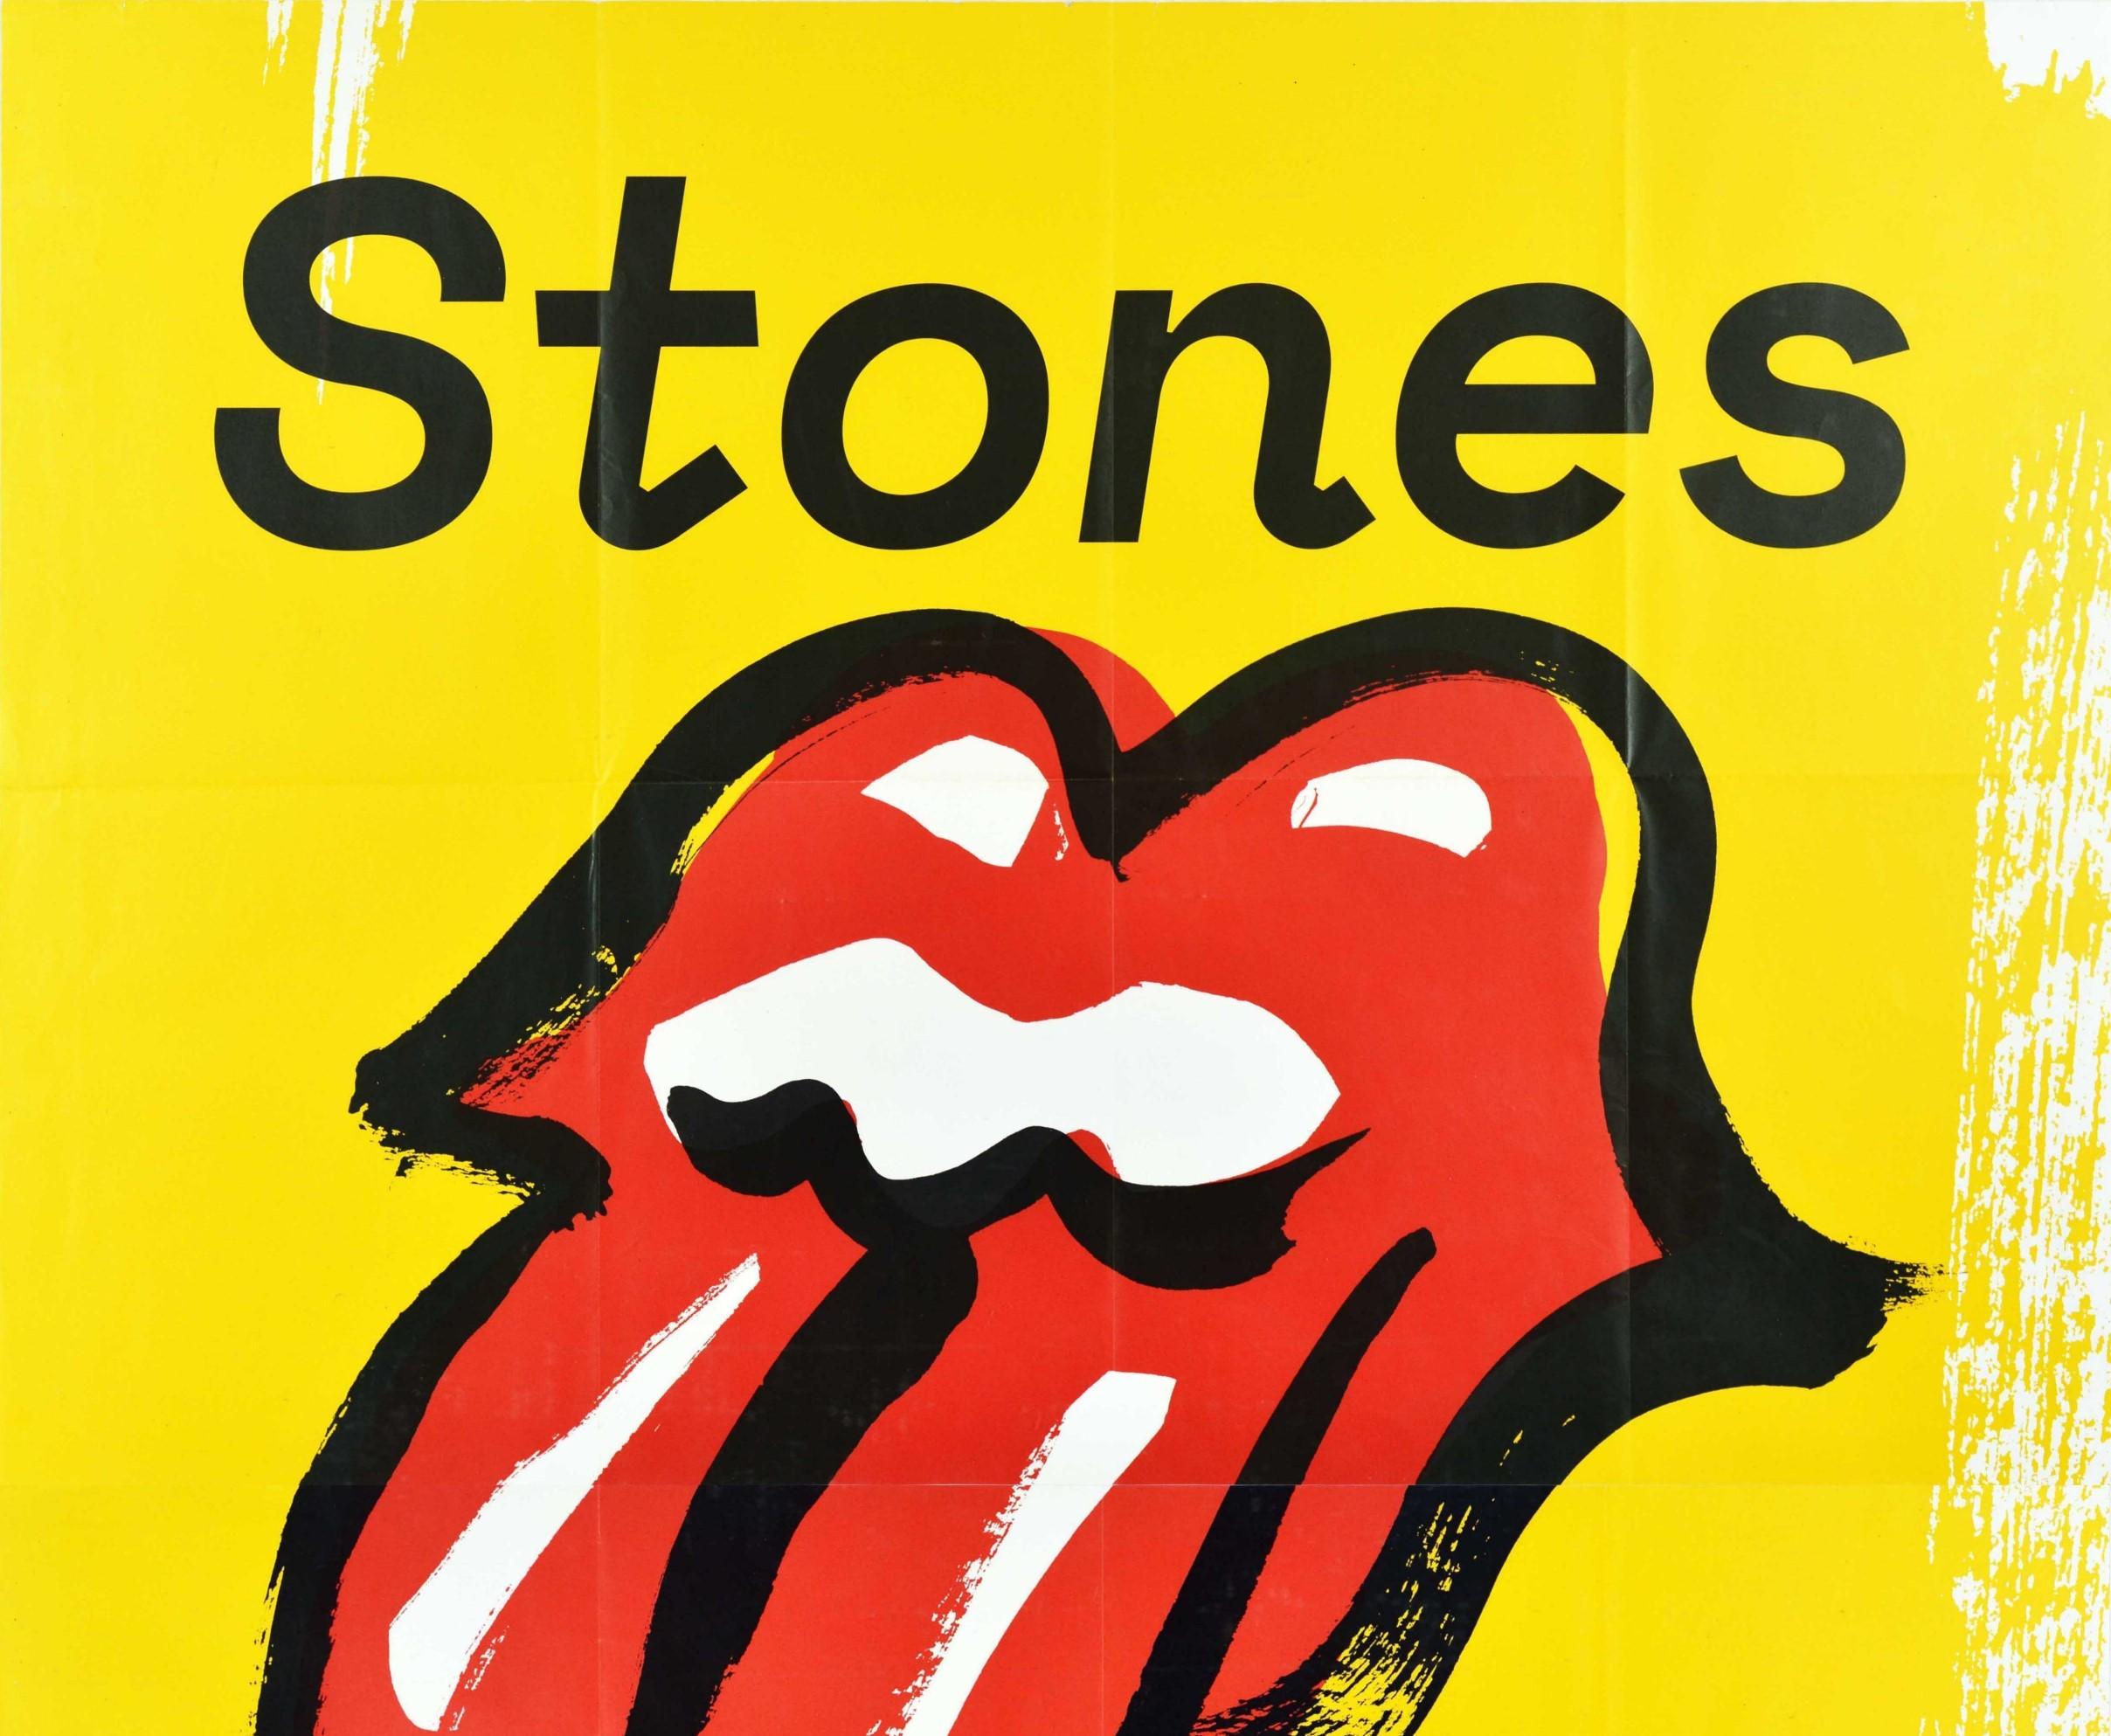 Affiche originale de concert de musique promouvant les Rolling Stones No Filter Tour Europe 2017 annonçant leur performance à l'Olympiastadion Munchen / Munich le 12 septembre 2017, avec le logo emblématique des Rolling Stones (alias logo Hot Lips)